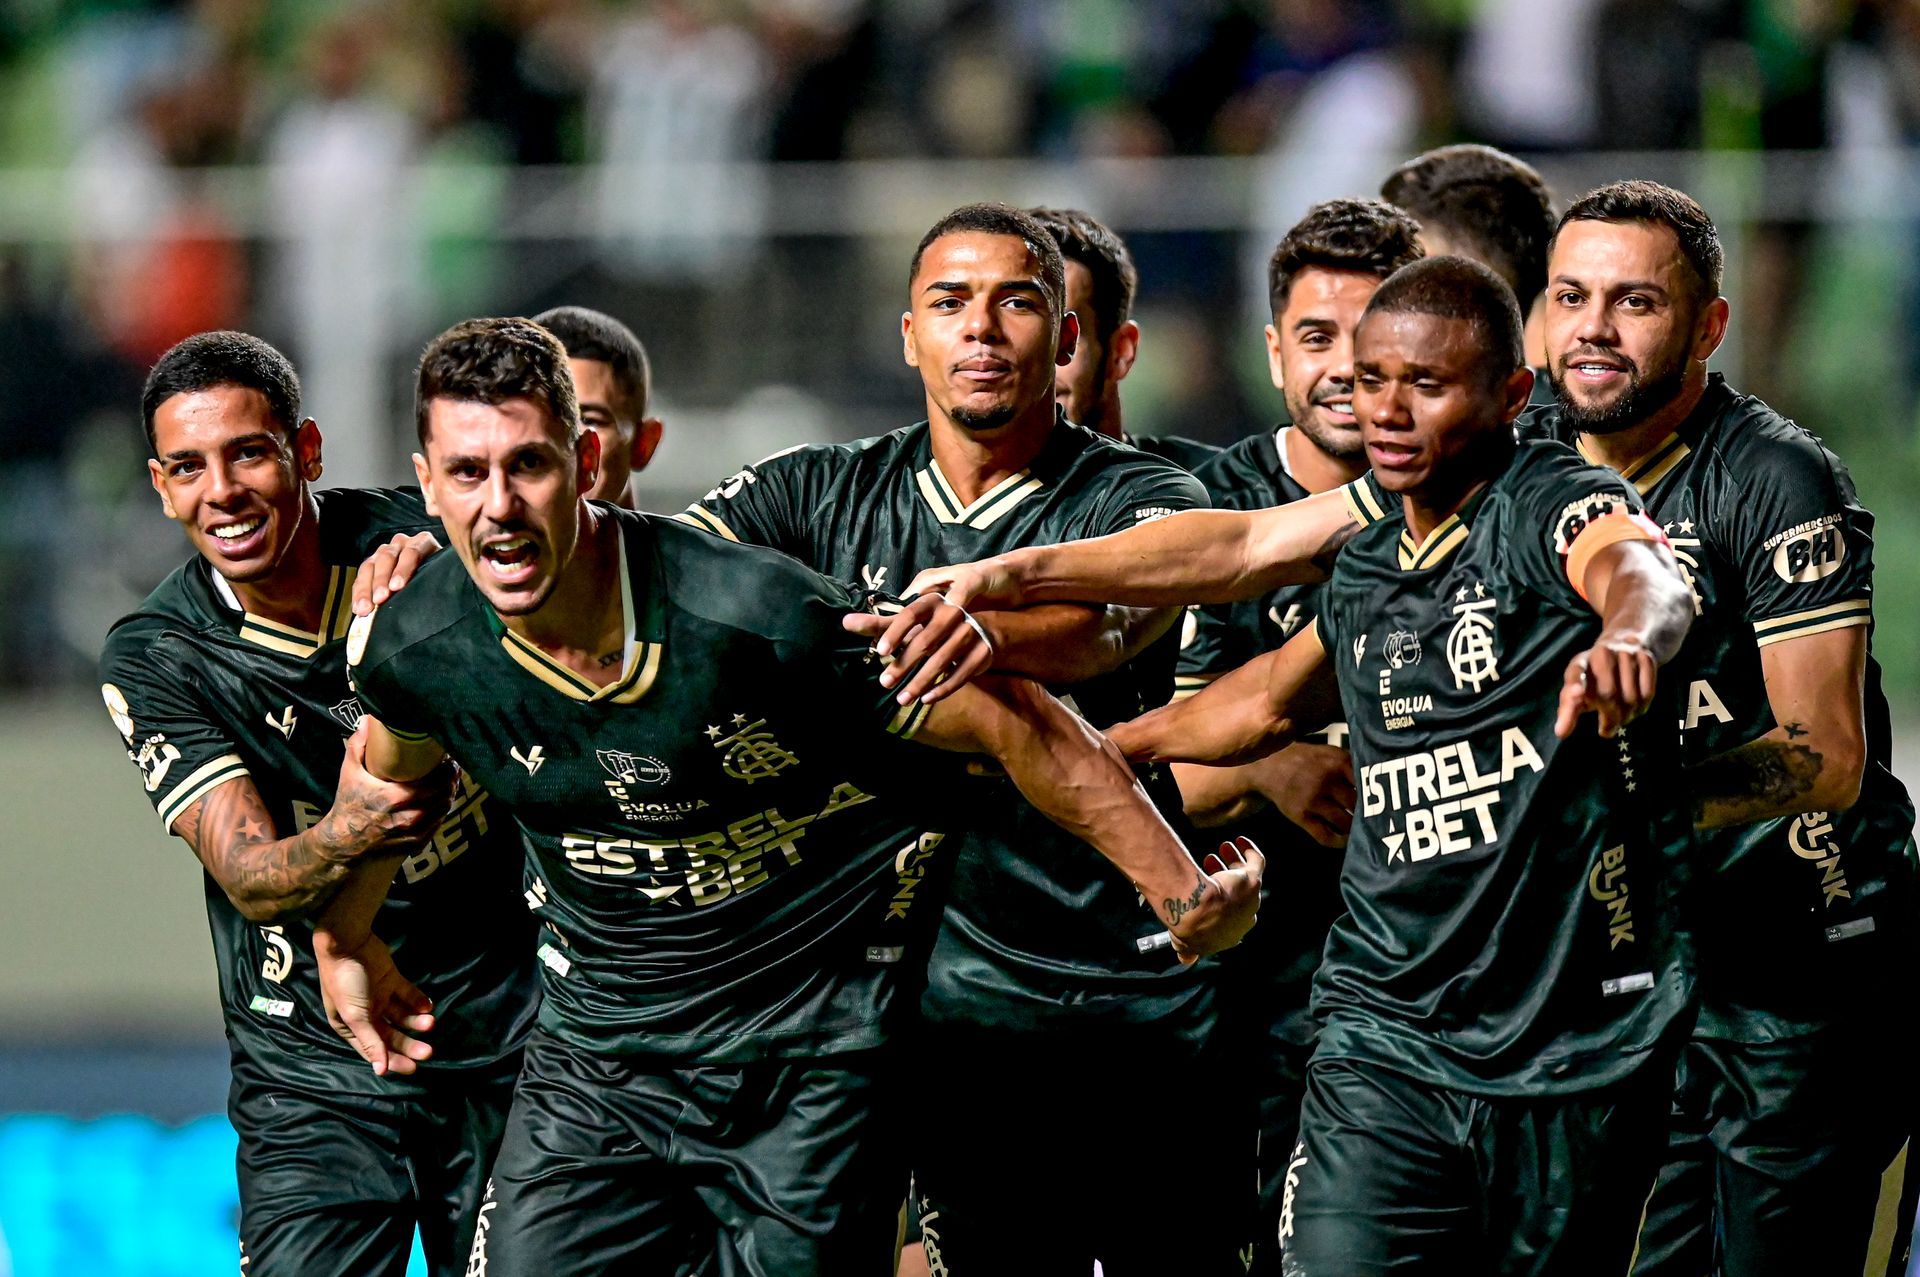 Com golaço de falta de Léo Fernández, Fluminense vence o Cruzeiro e volta  ao G4 do Brasileirão